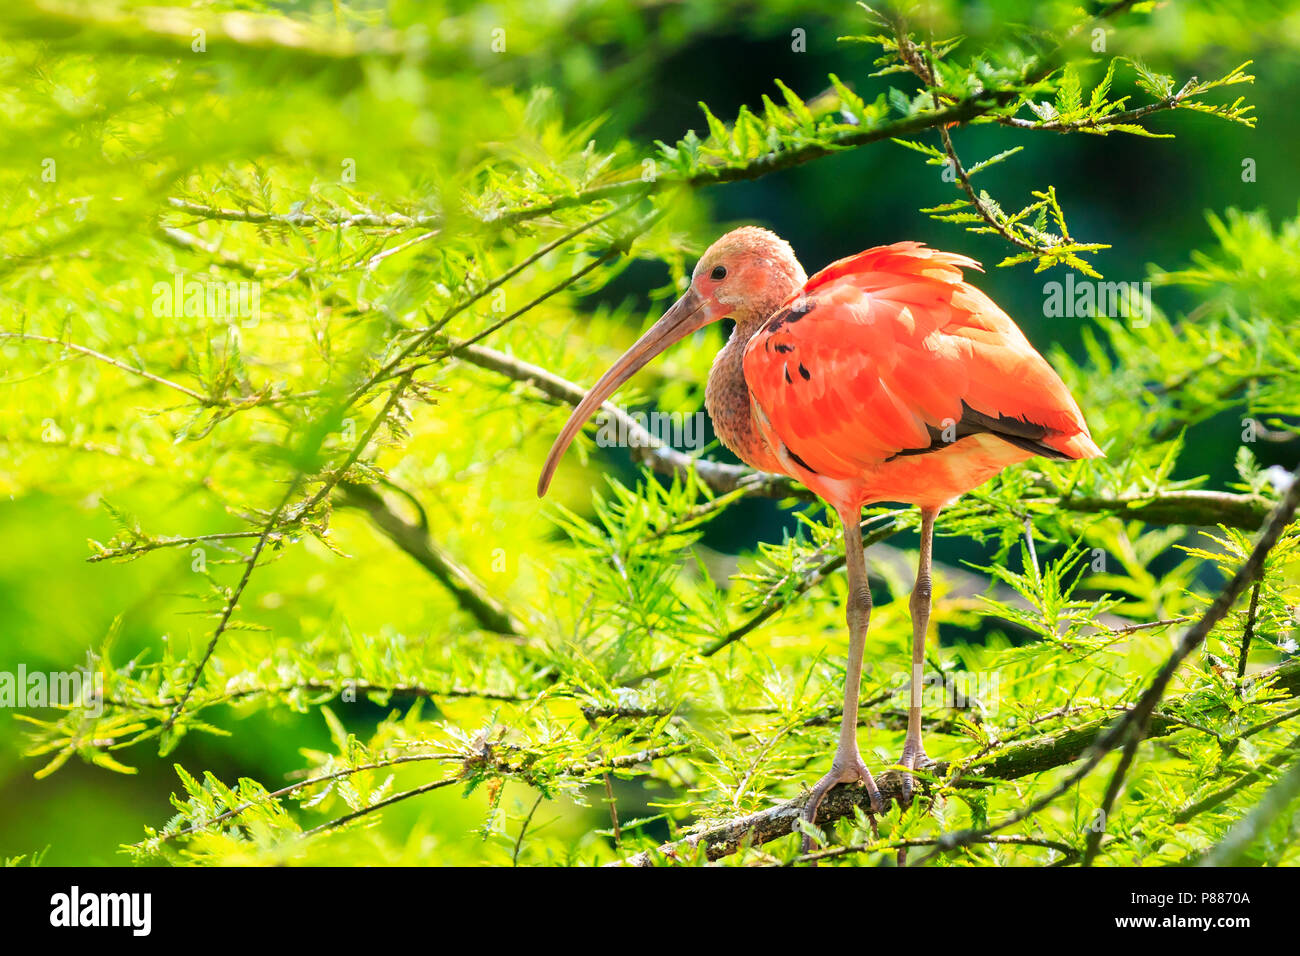 Aves ibis escarlata (Eudocimus ruber) encaramado en un árbol, acicalarse y secando sus alas en el sol. Es una de las dos aves nacionales de Trinidad y T Foto de stock